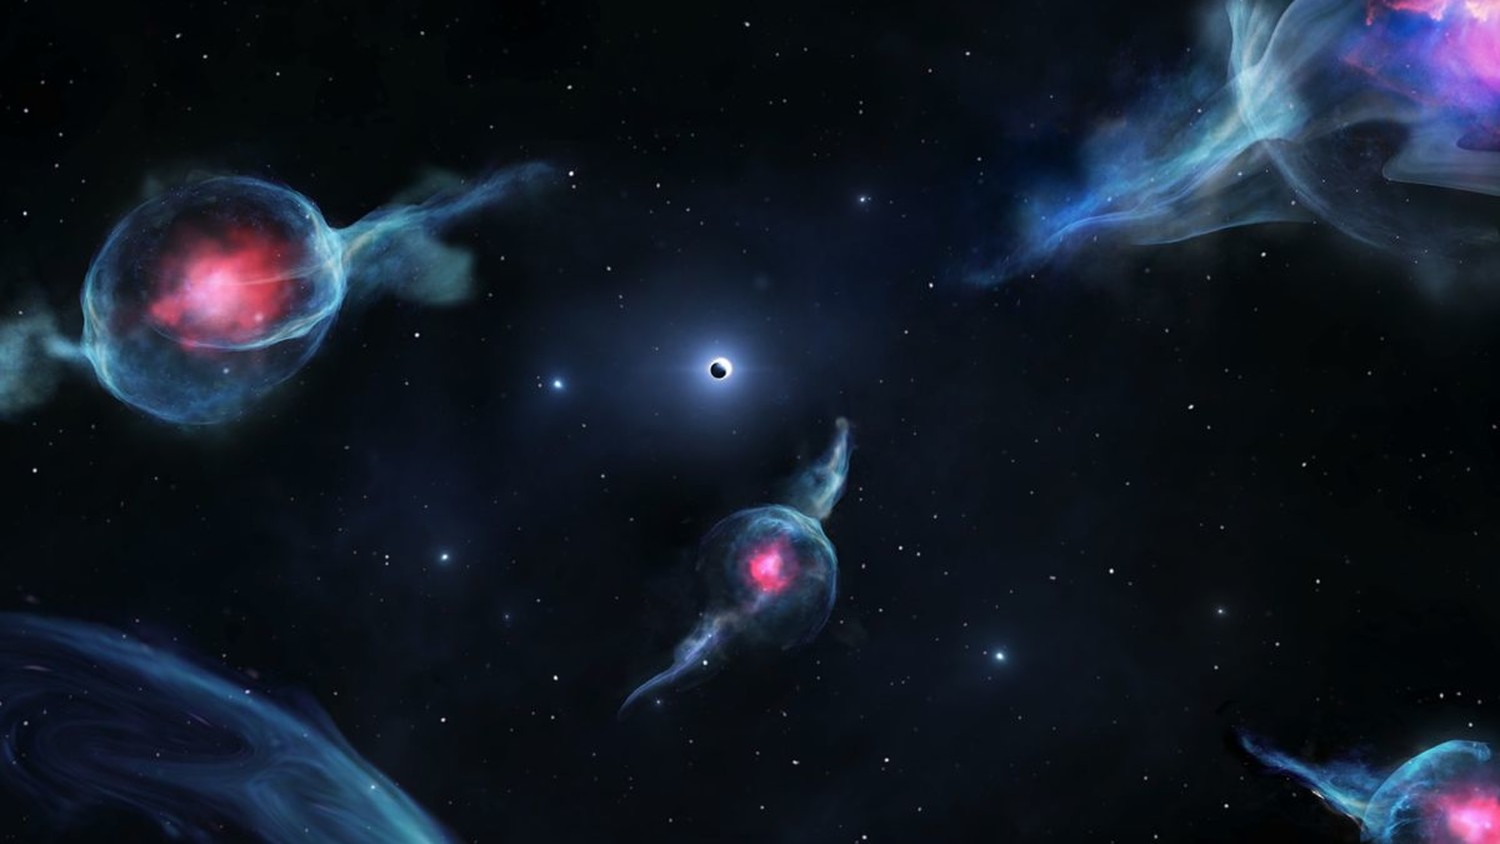 У черной дыры в центре Млечного Пути замечены странные спутники